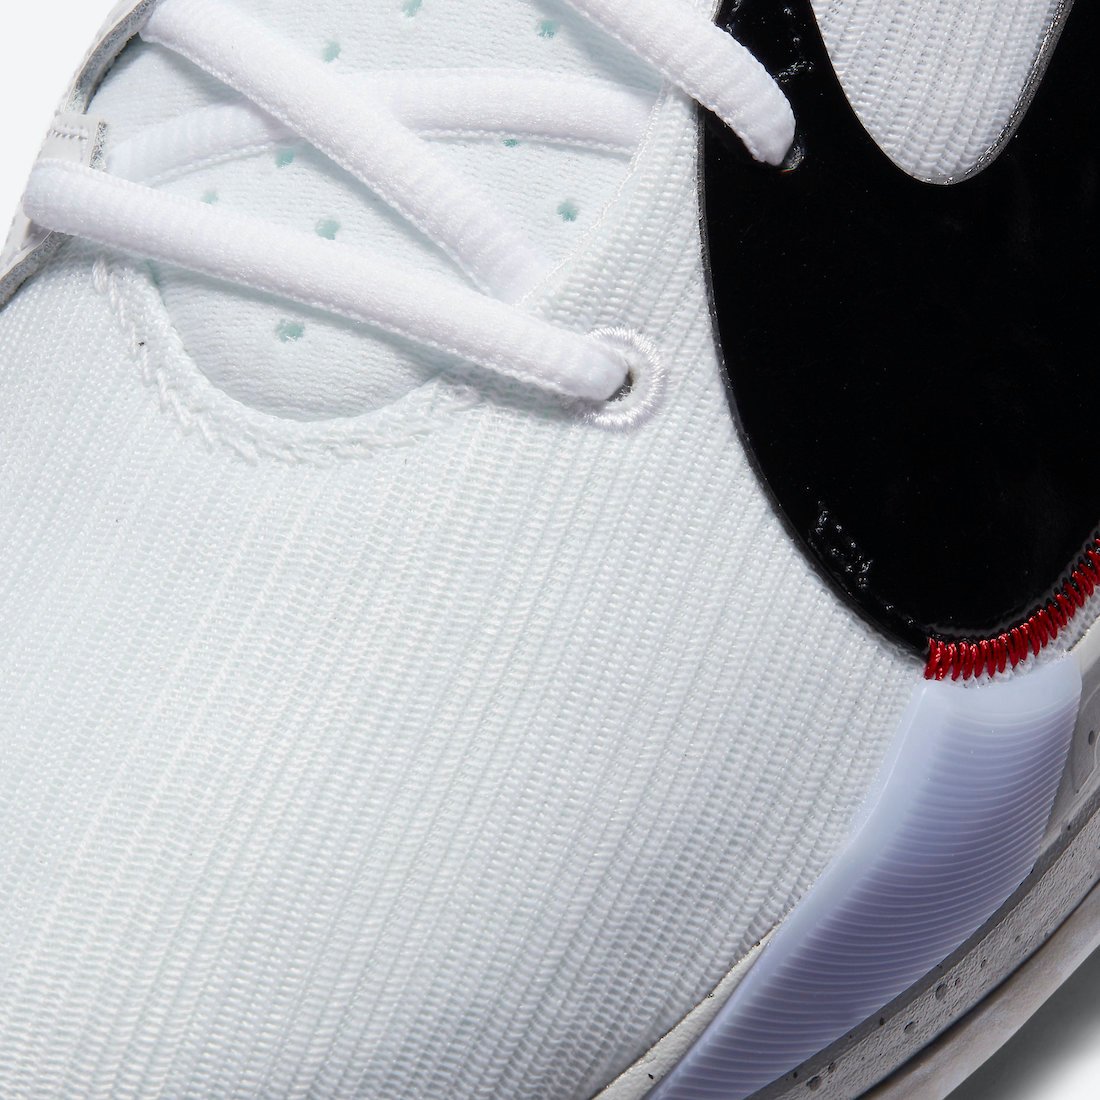 Nike Zoom Freak 2 White Cement CK5825-100 Release Date Info | SneakerFiles